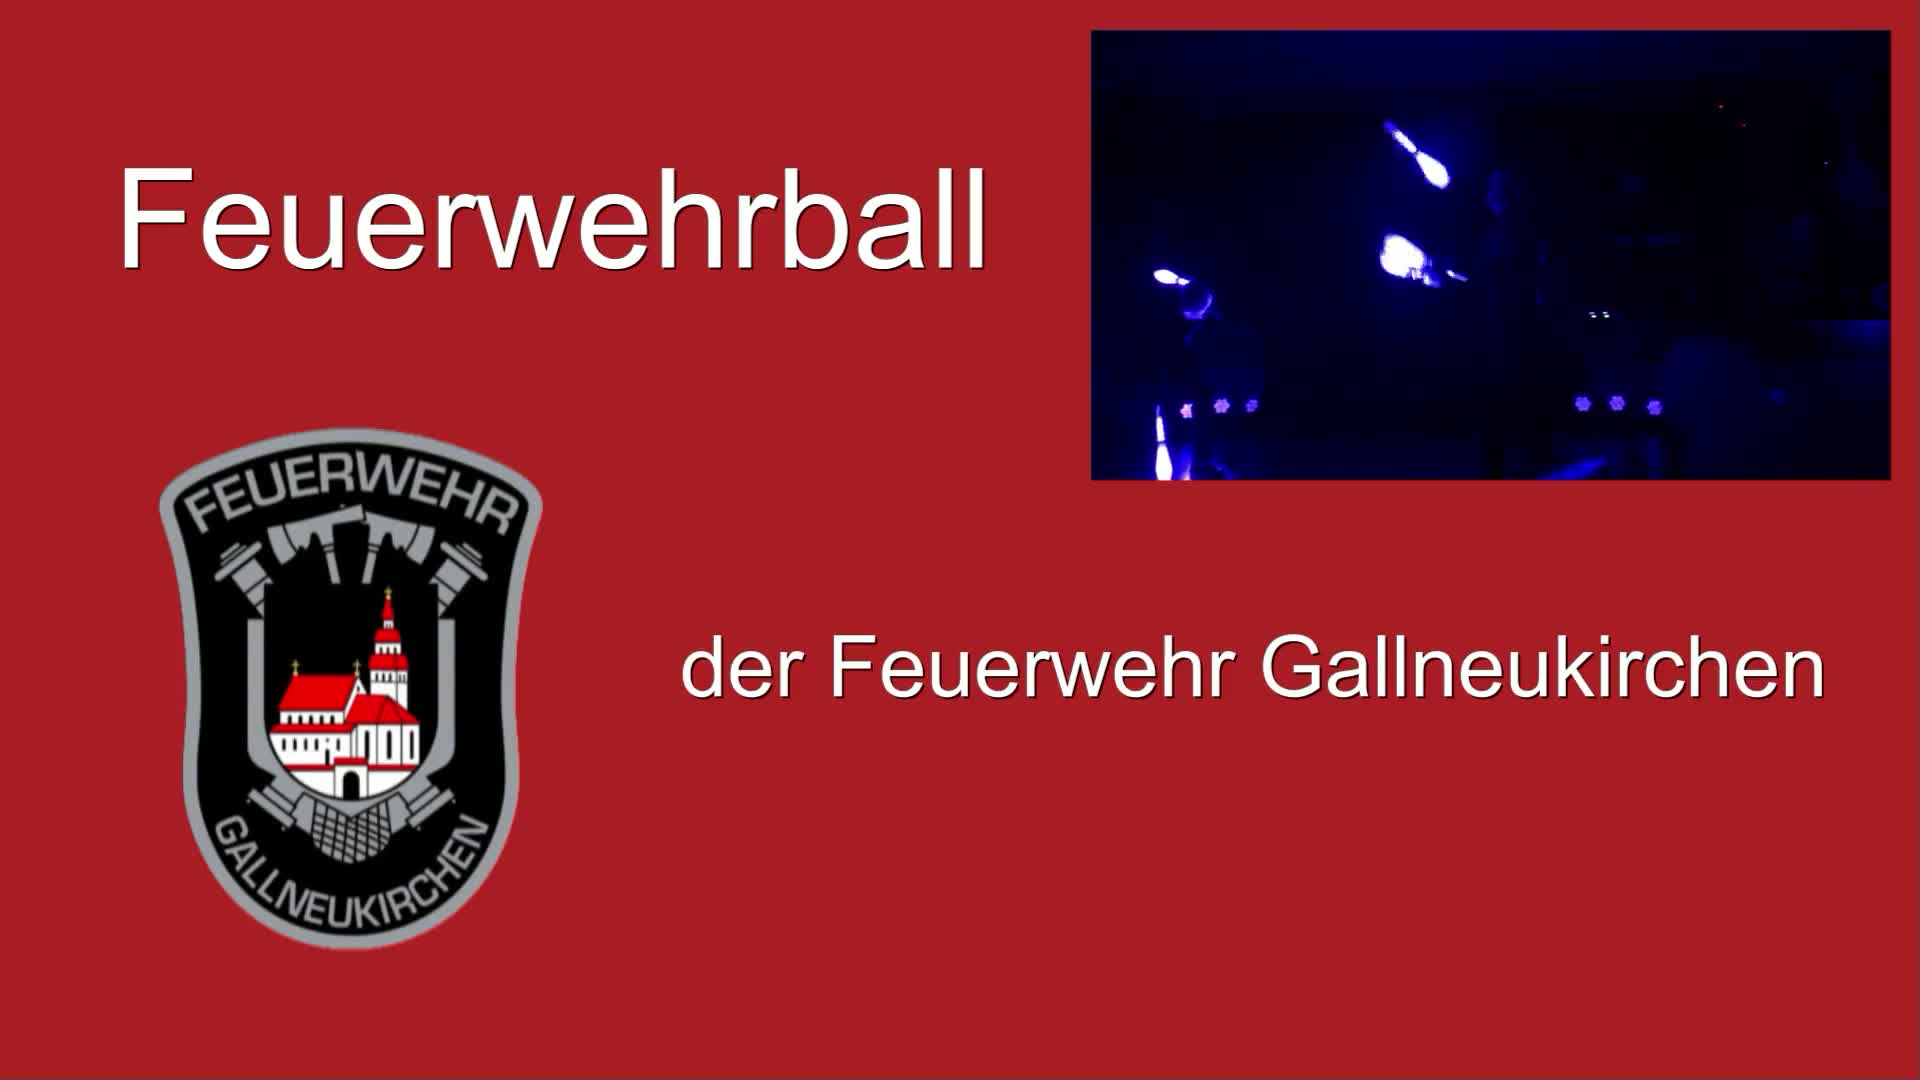 Feuerwehrball in Gallneukirchen